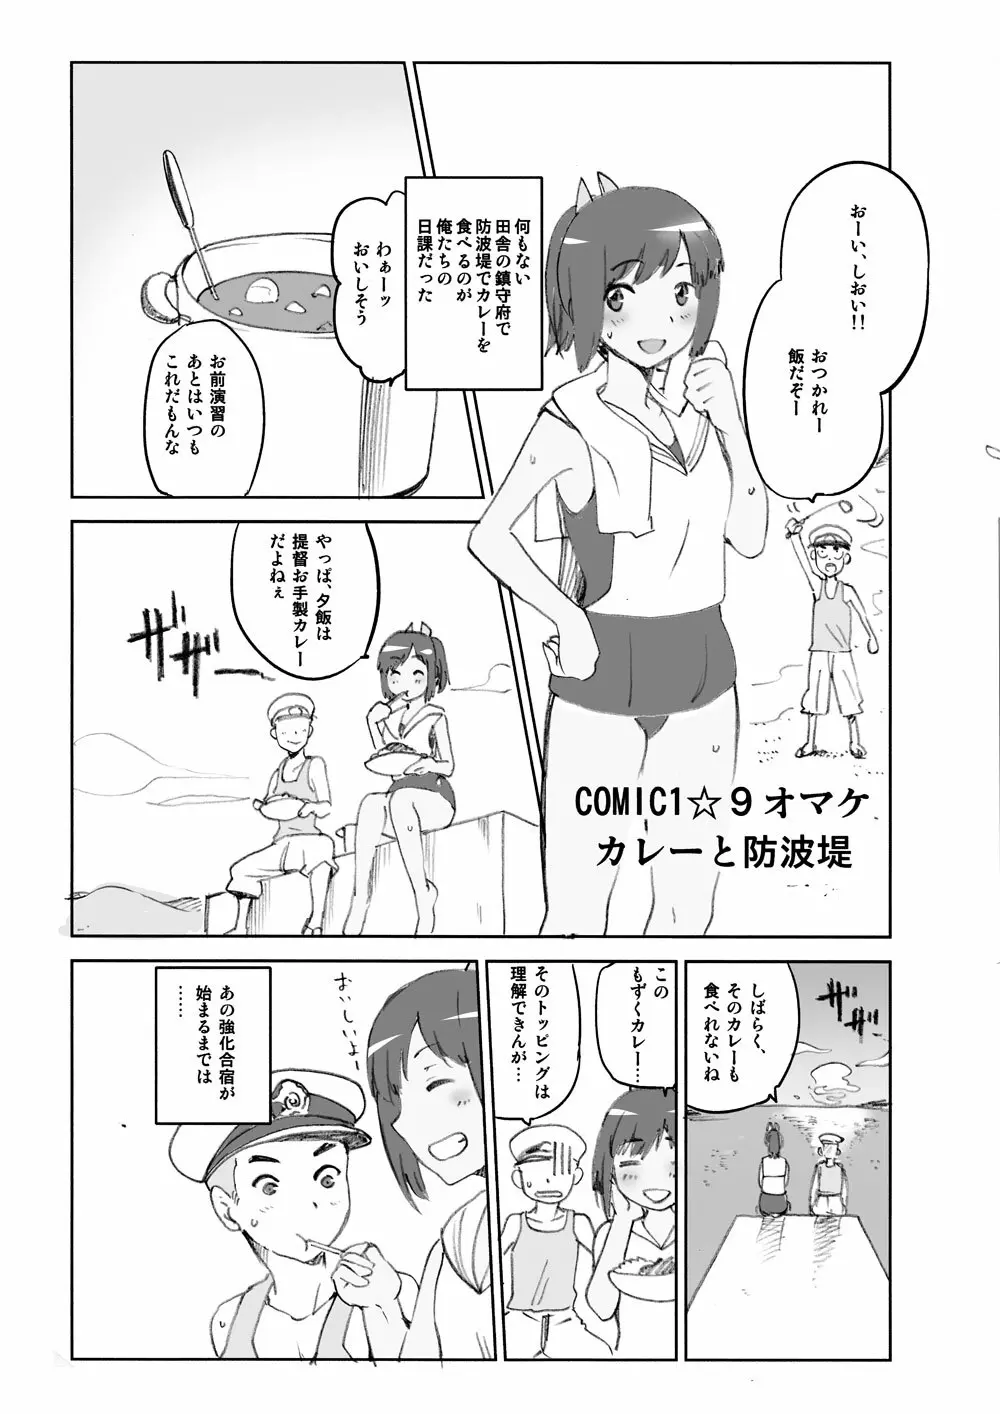 COMIC1☆9 オマケ カレーと防波堤